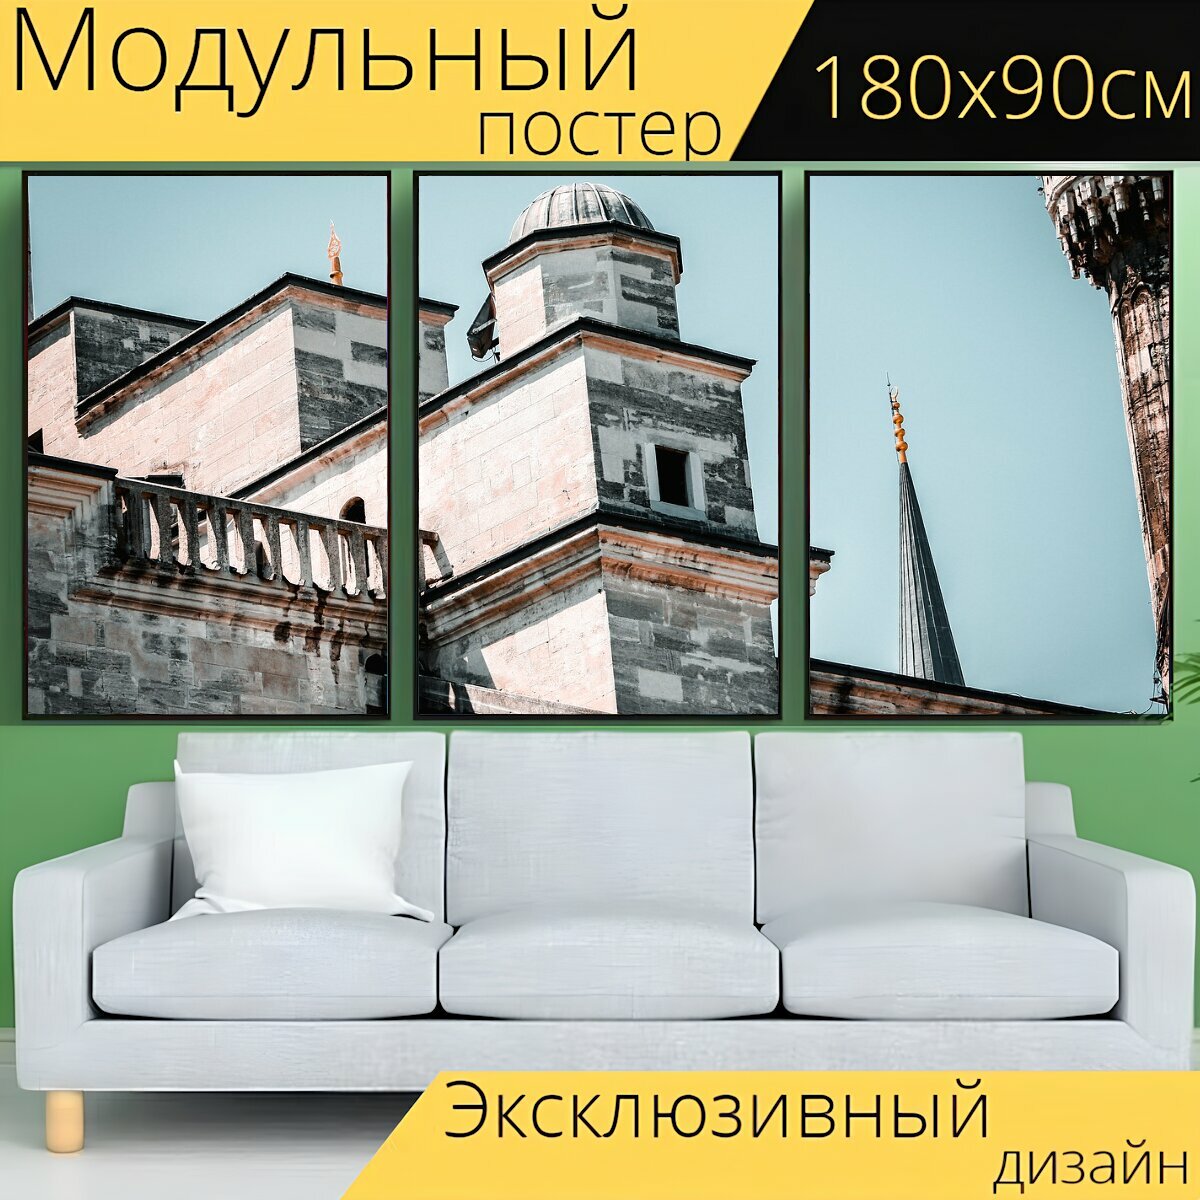 Модульный постер "Исламский, собор святой софии, стамбул" 180 x 90 см. для интерьера